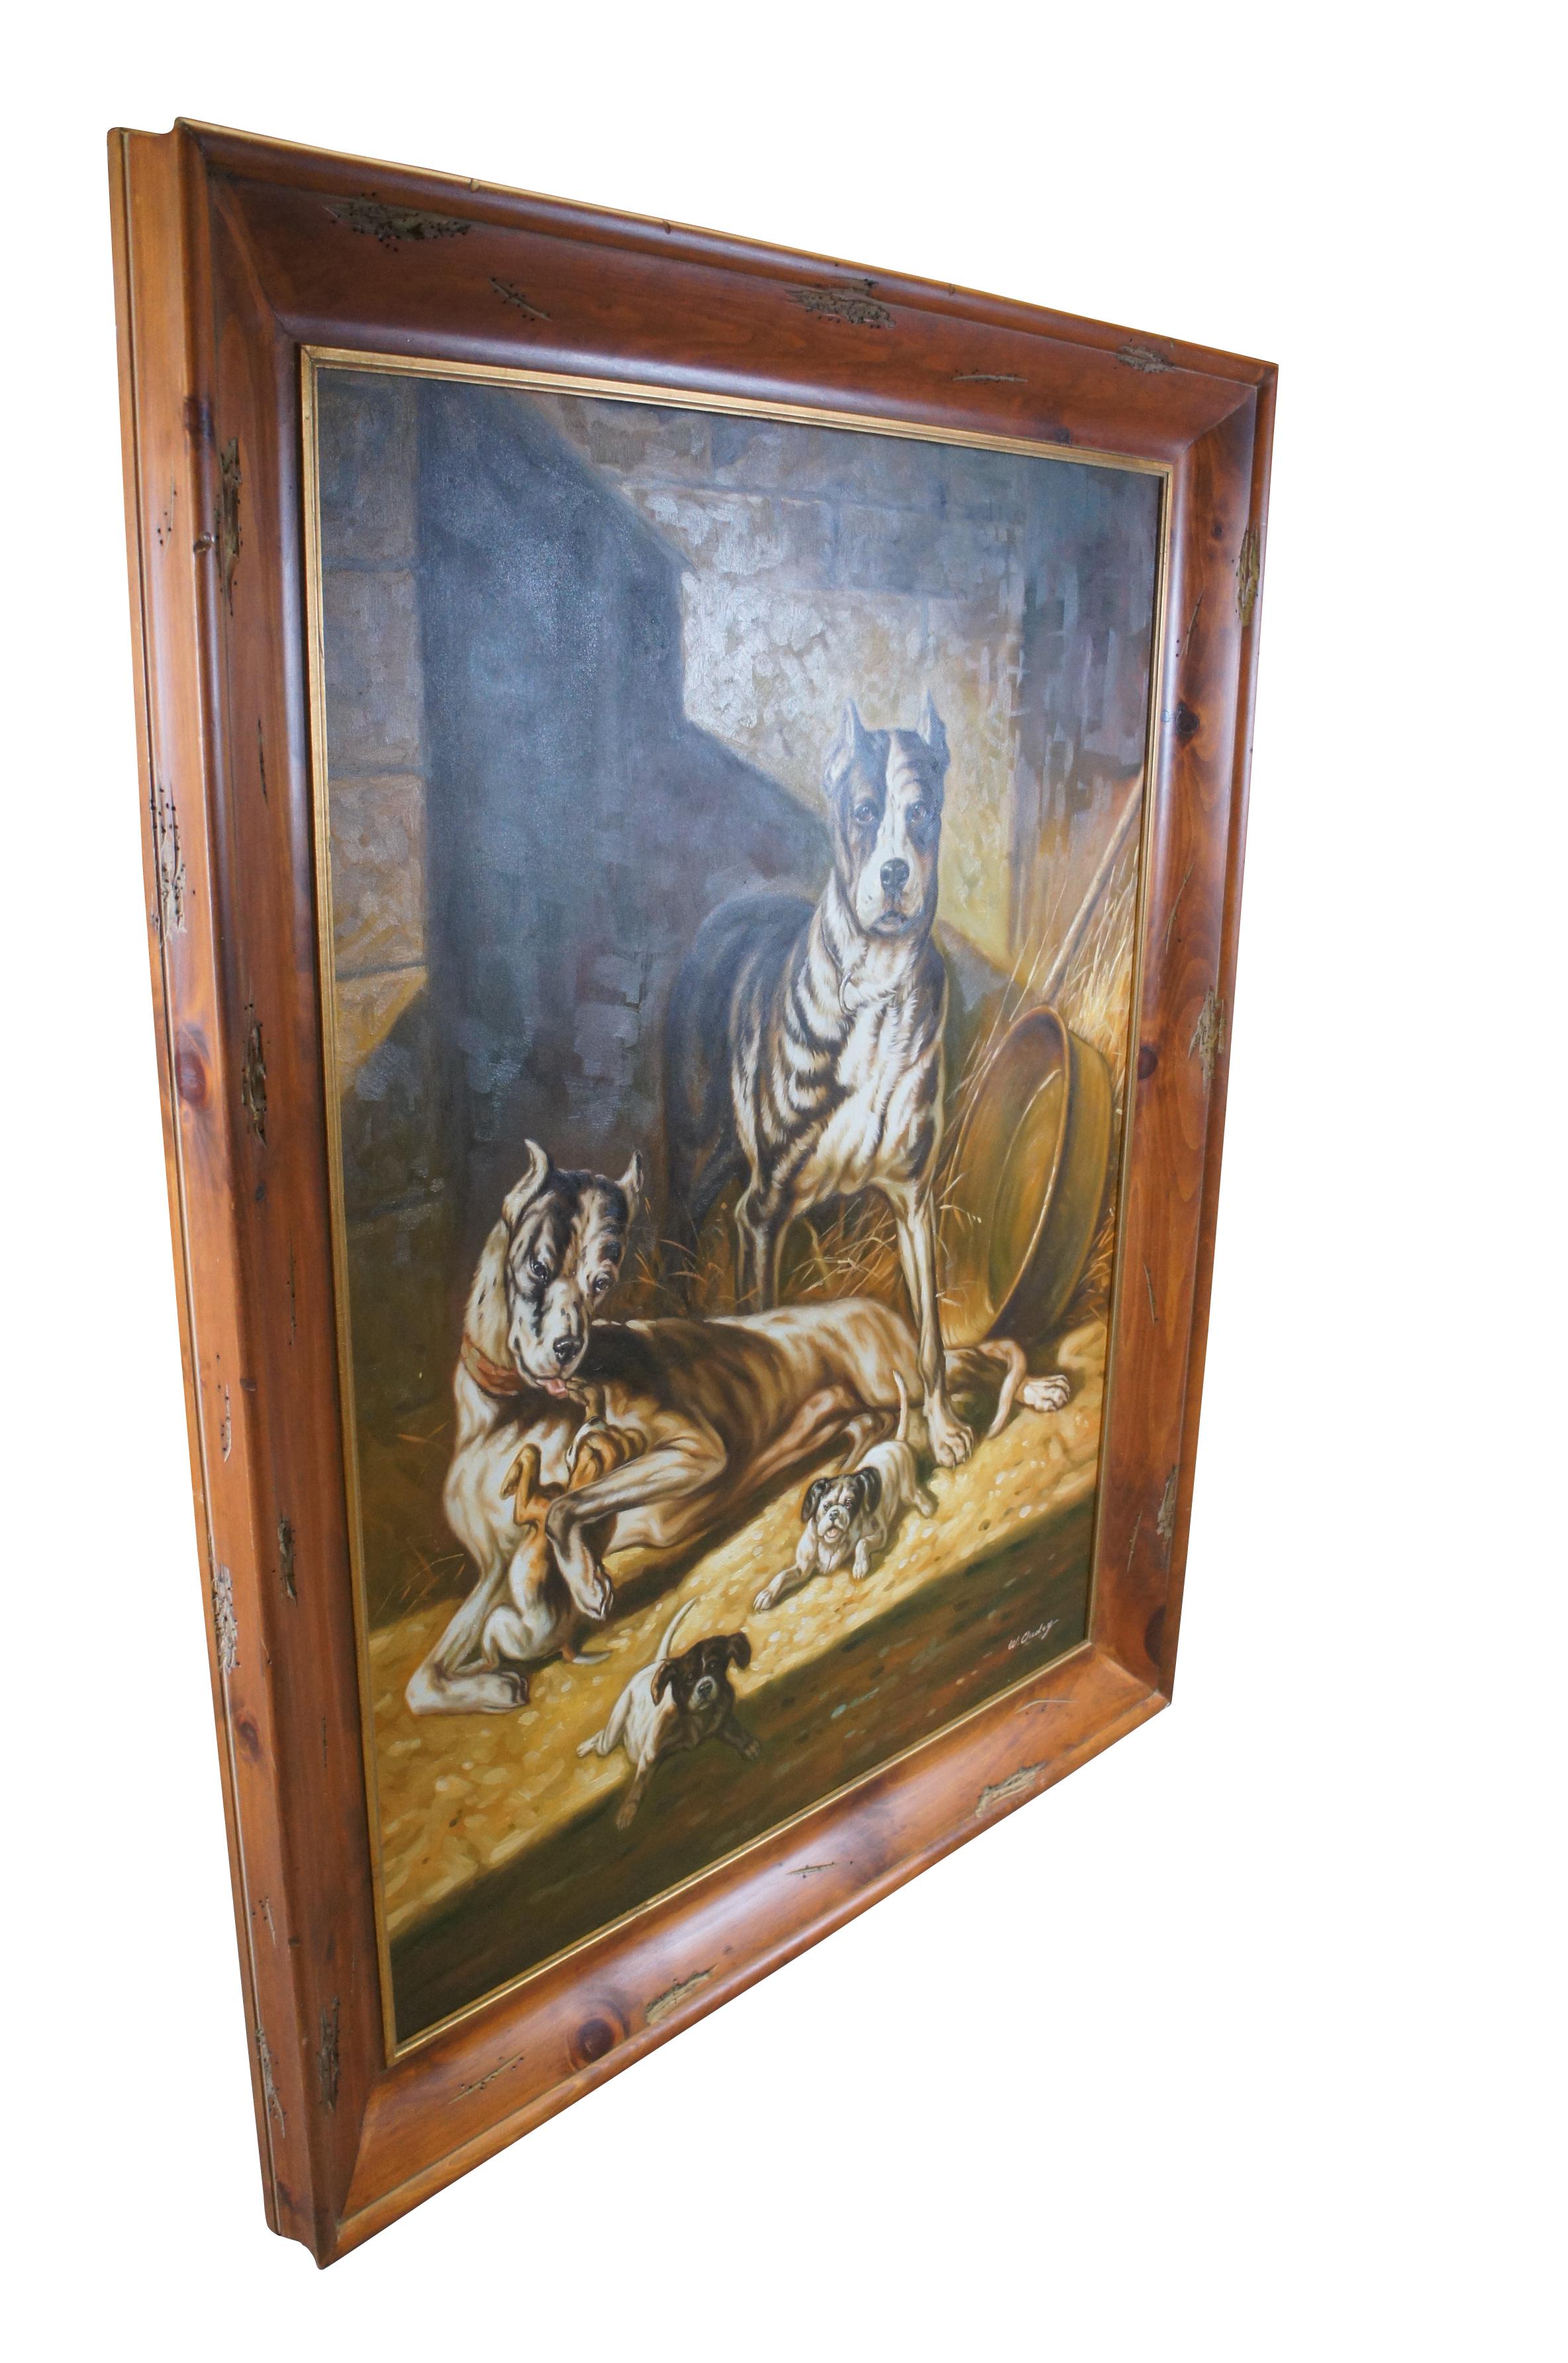 Grande peinture à l'huile sur toile vintage de W Oudry représentant un couple de bouledogues anthropomorphes avec leurs jeunes chiots.  Cette pièce a fait l'objet d'une commande privée vers la fin du XXe siècle.  Encadré dans un cadre en pin cerise